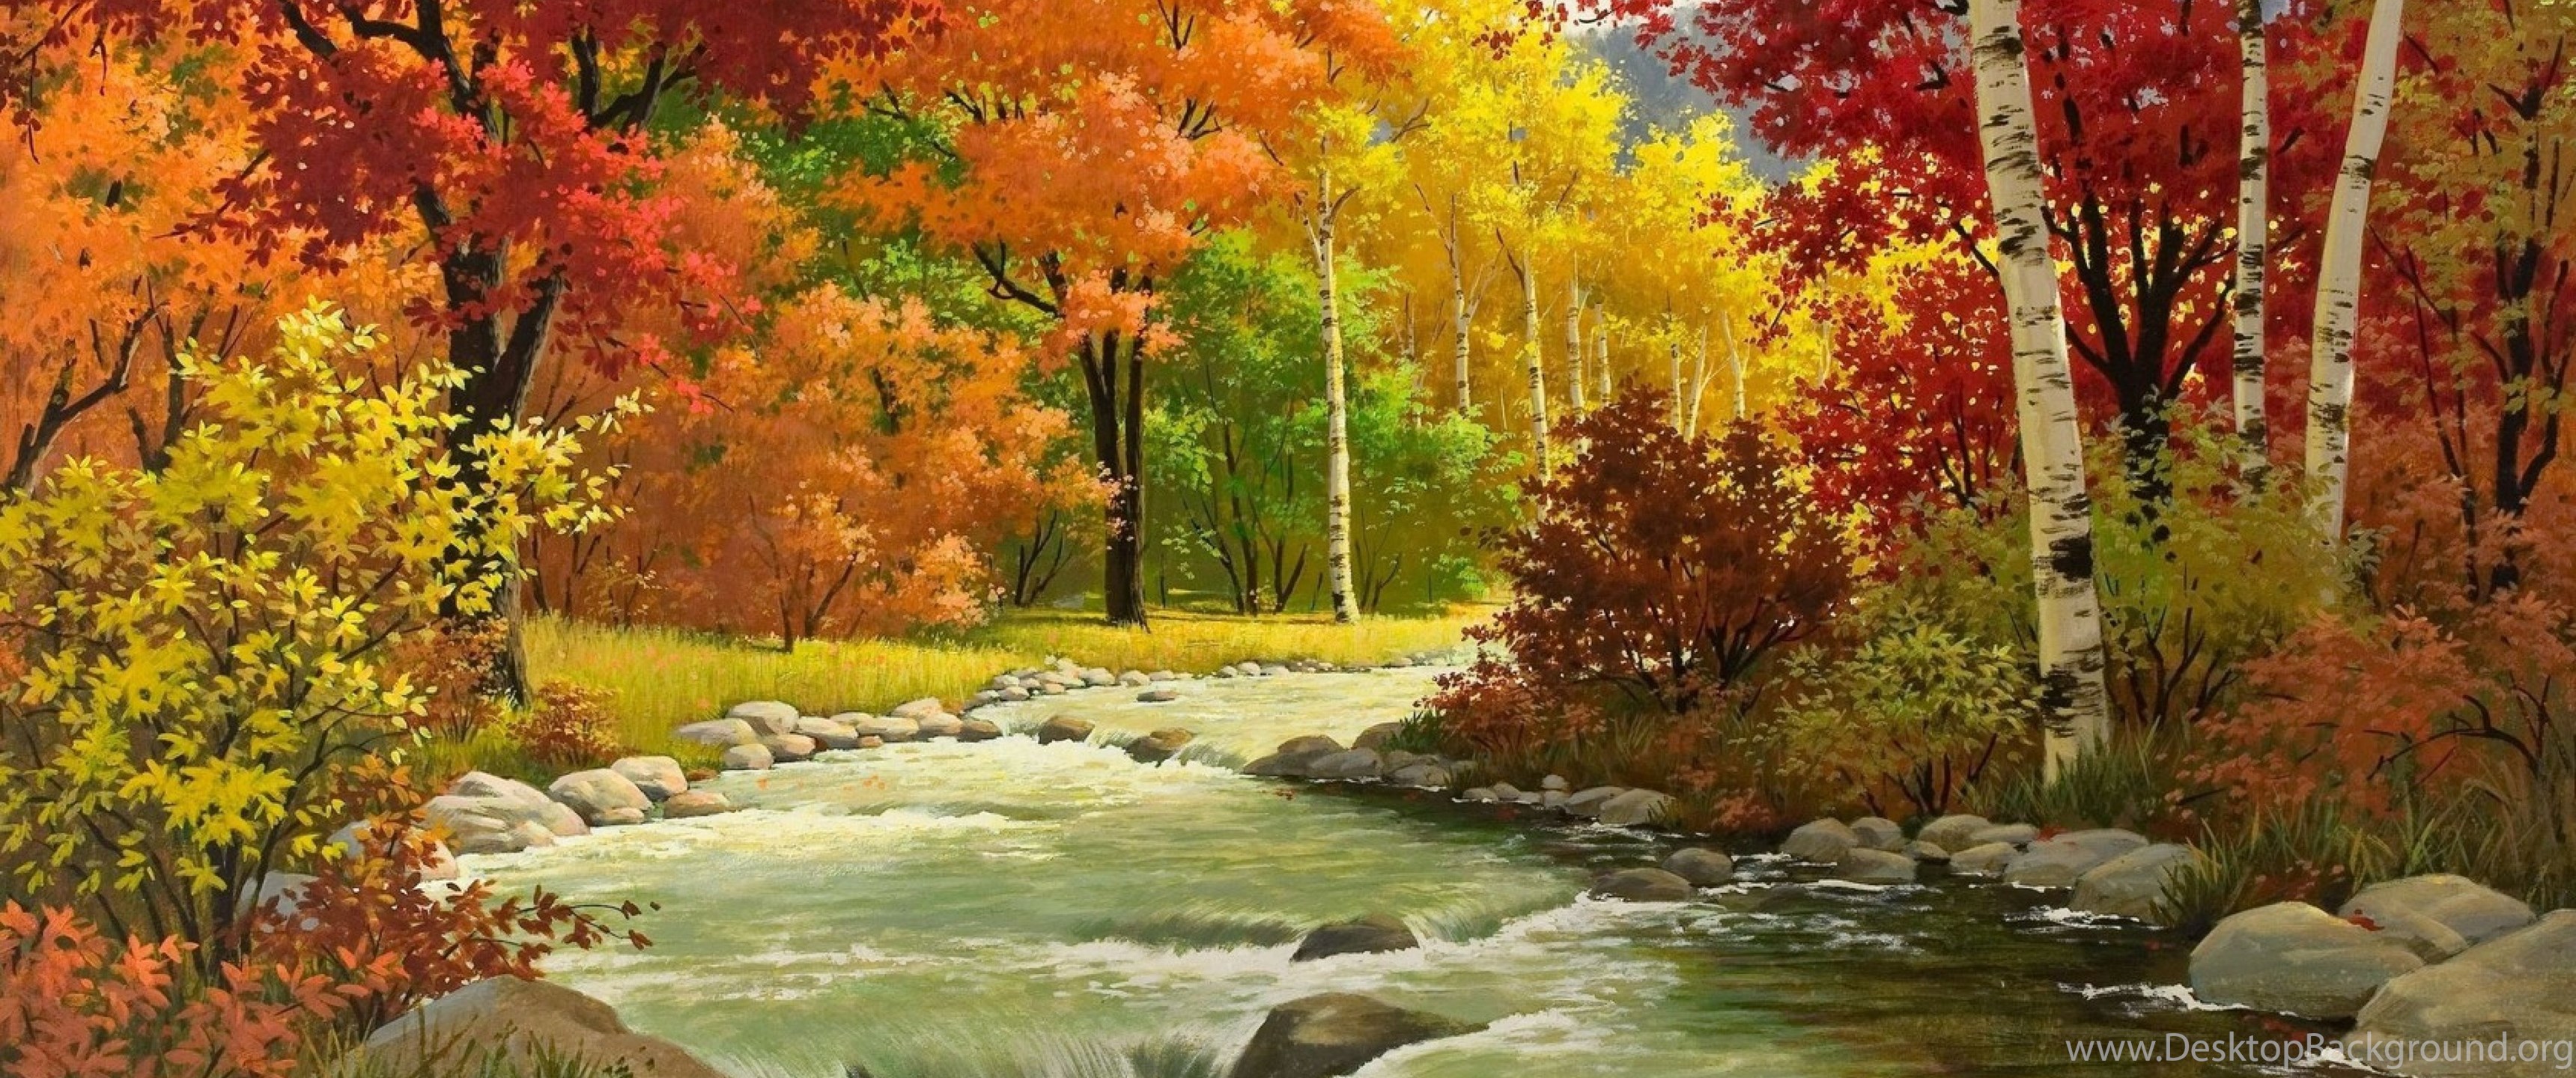 Download Wallpaper 3840x2160 Autumn, Landscape, Painting, River. Desktop Background